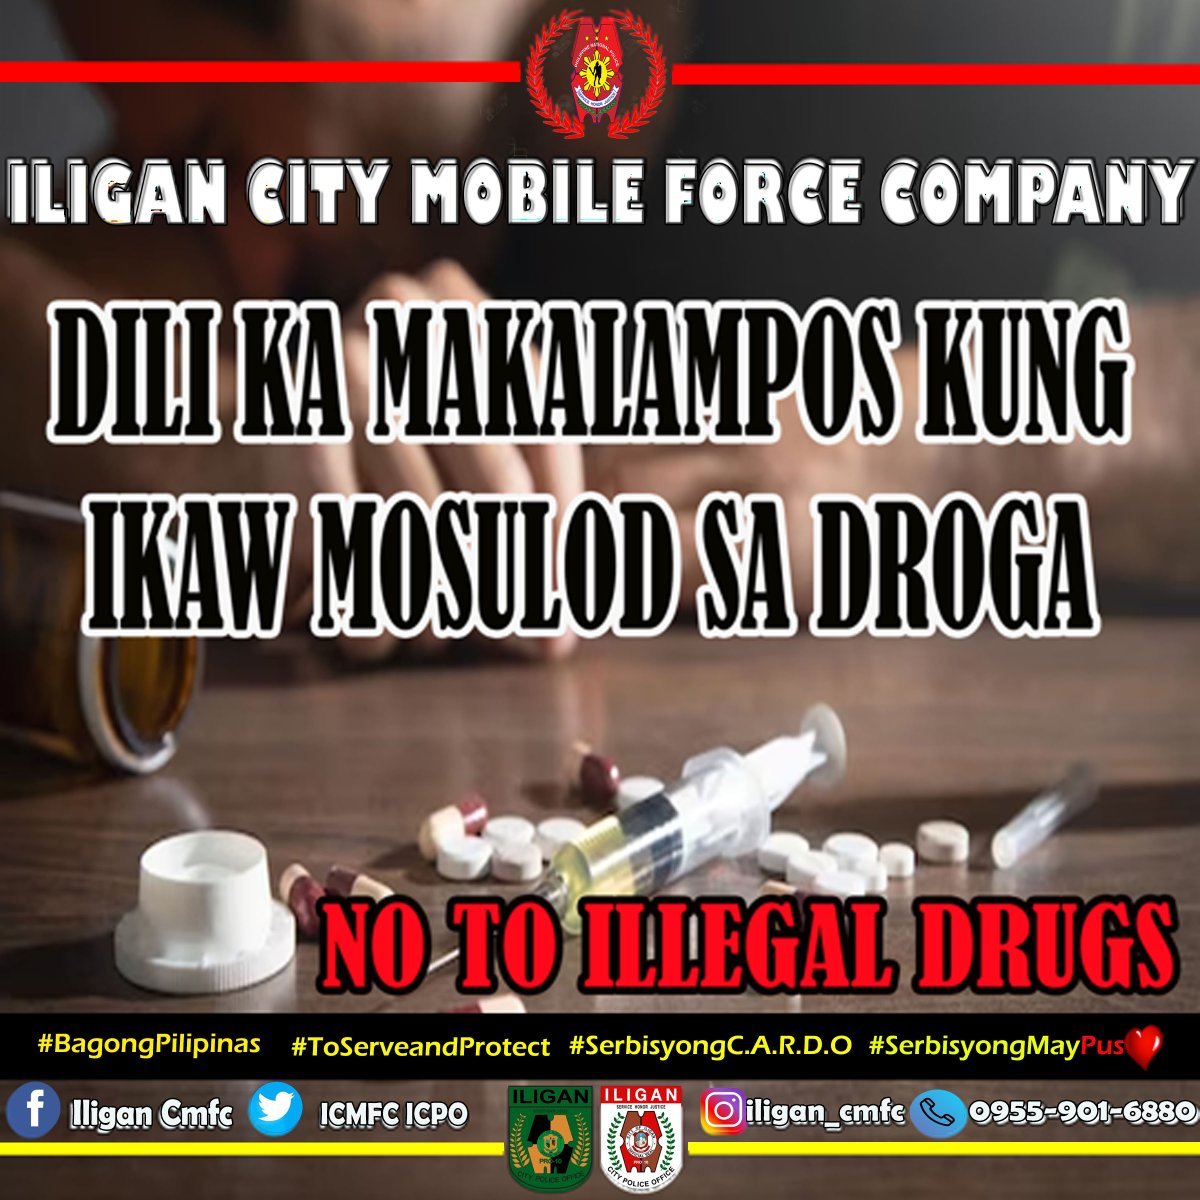 NO TO ILLEGAL DRUGS !

#ToServeandProtect
#BagongPilipinas 
#SerbisyongCARDO 
#SerbisyongMayPuso